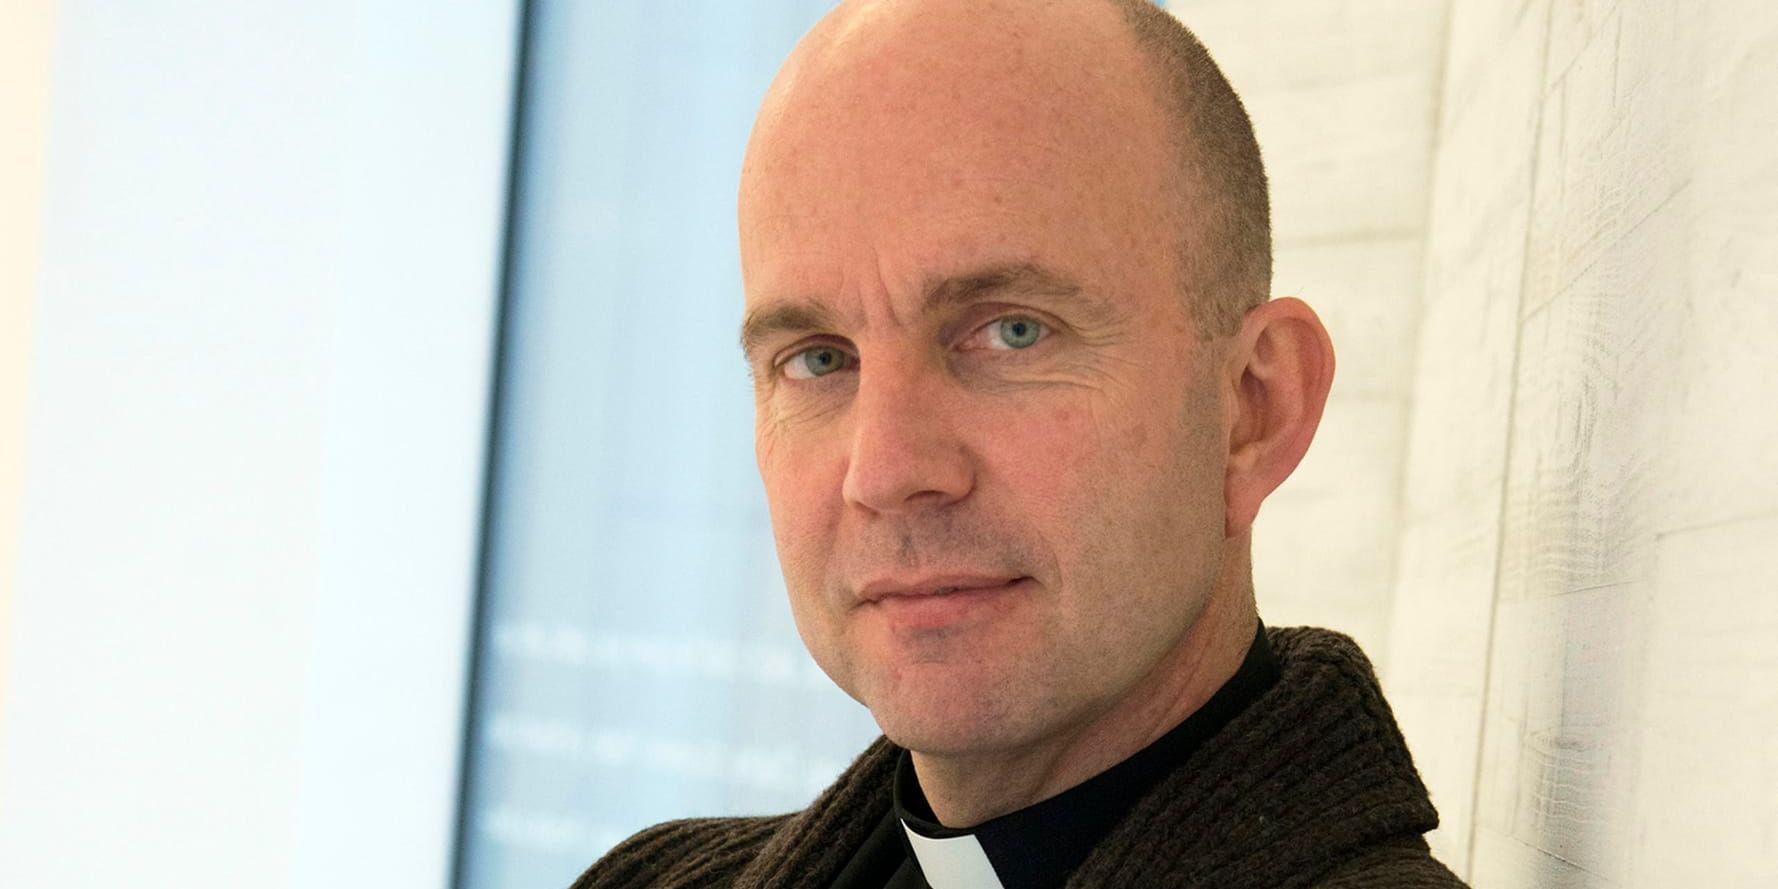 Biskop Fredrik Modéus i Växjö hoppas att få höra både kyrkklockor och böneutrop i Växjö. Arkivbild.